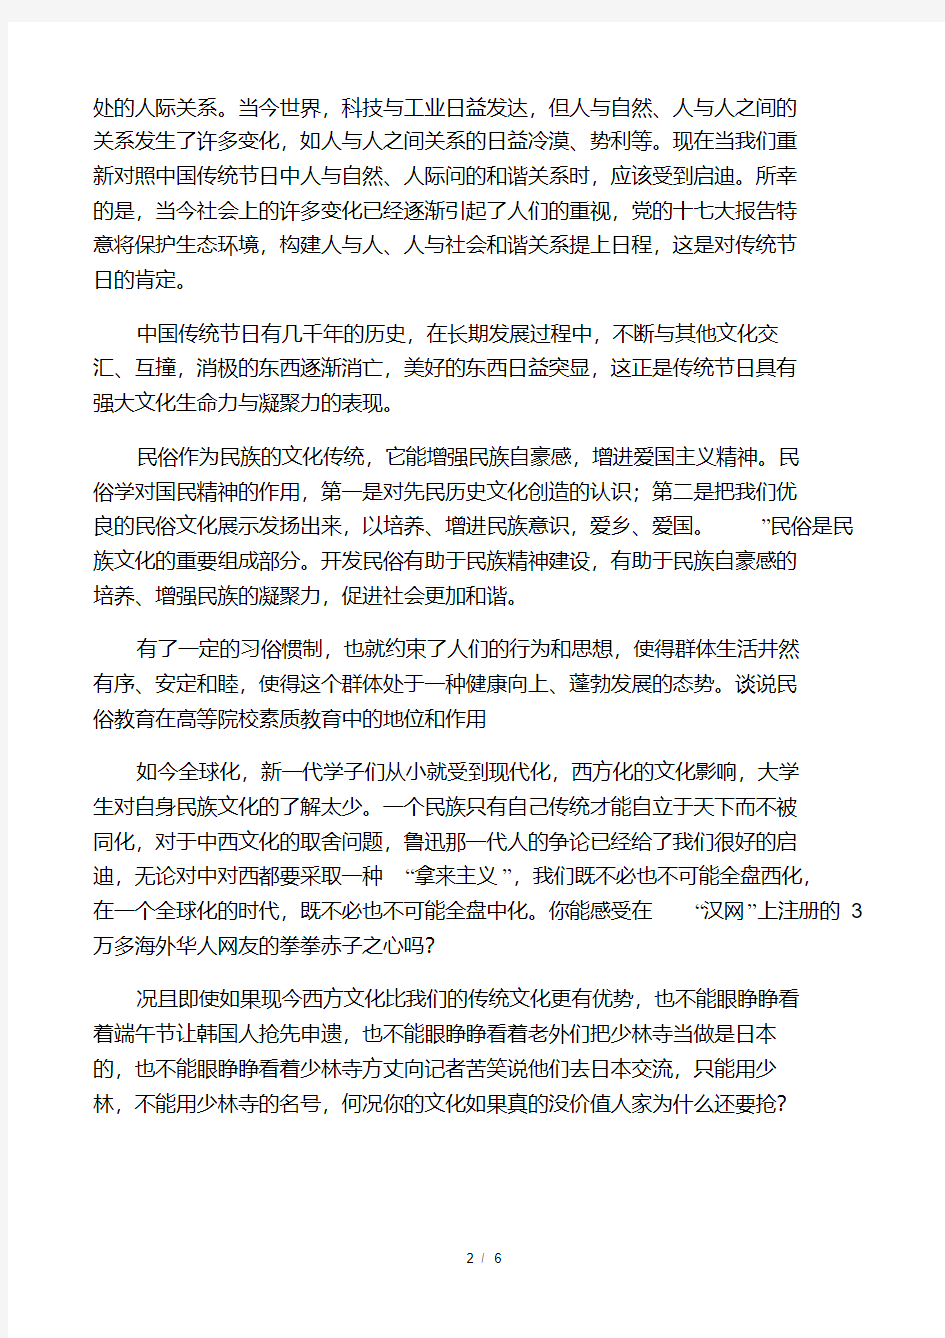 中国传统节日的文化价值及其在构建和谐社会中的作用(民俗教育).pdf